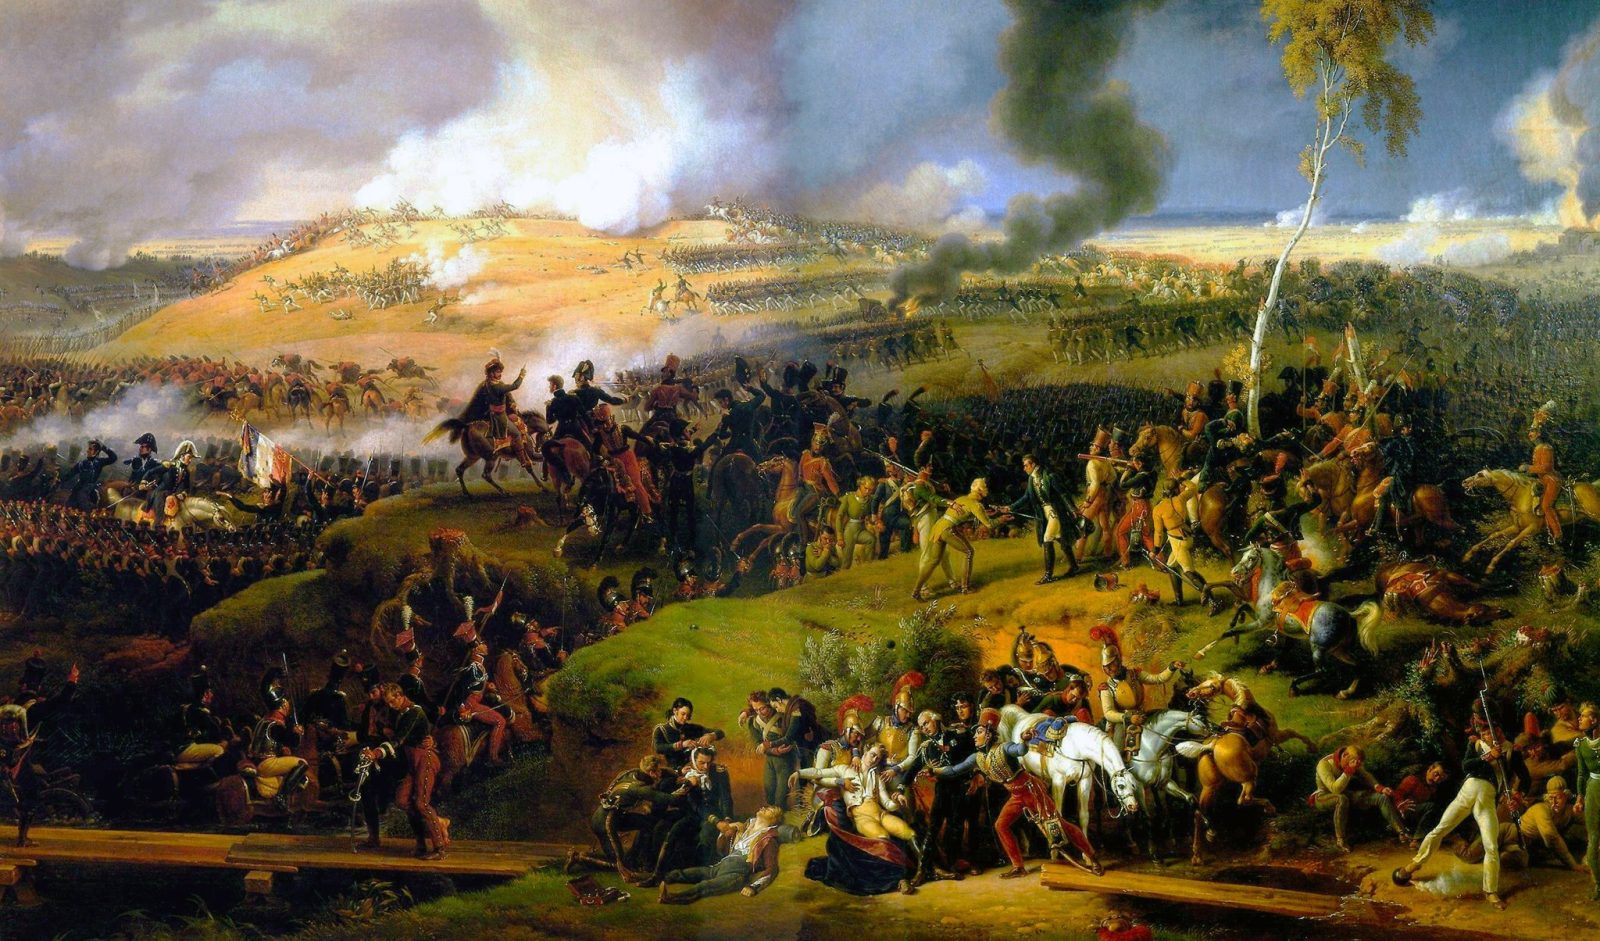 Картина «Битва за Москву, 7 сентября 1812 года» (1822 г.) — художник барон Луи-Франсуа Лежен.